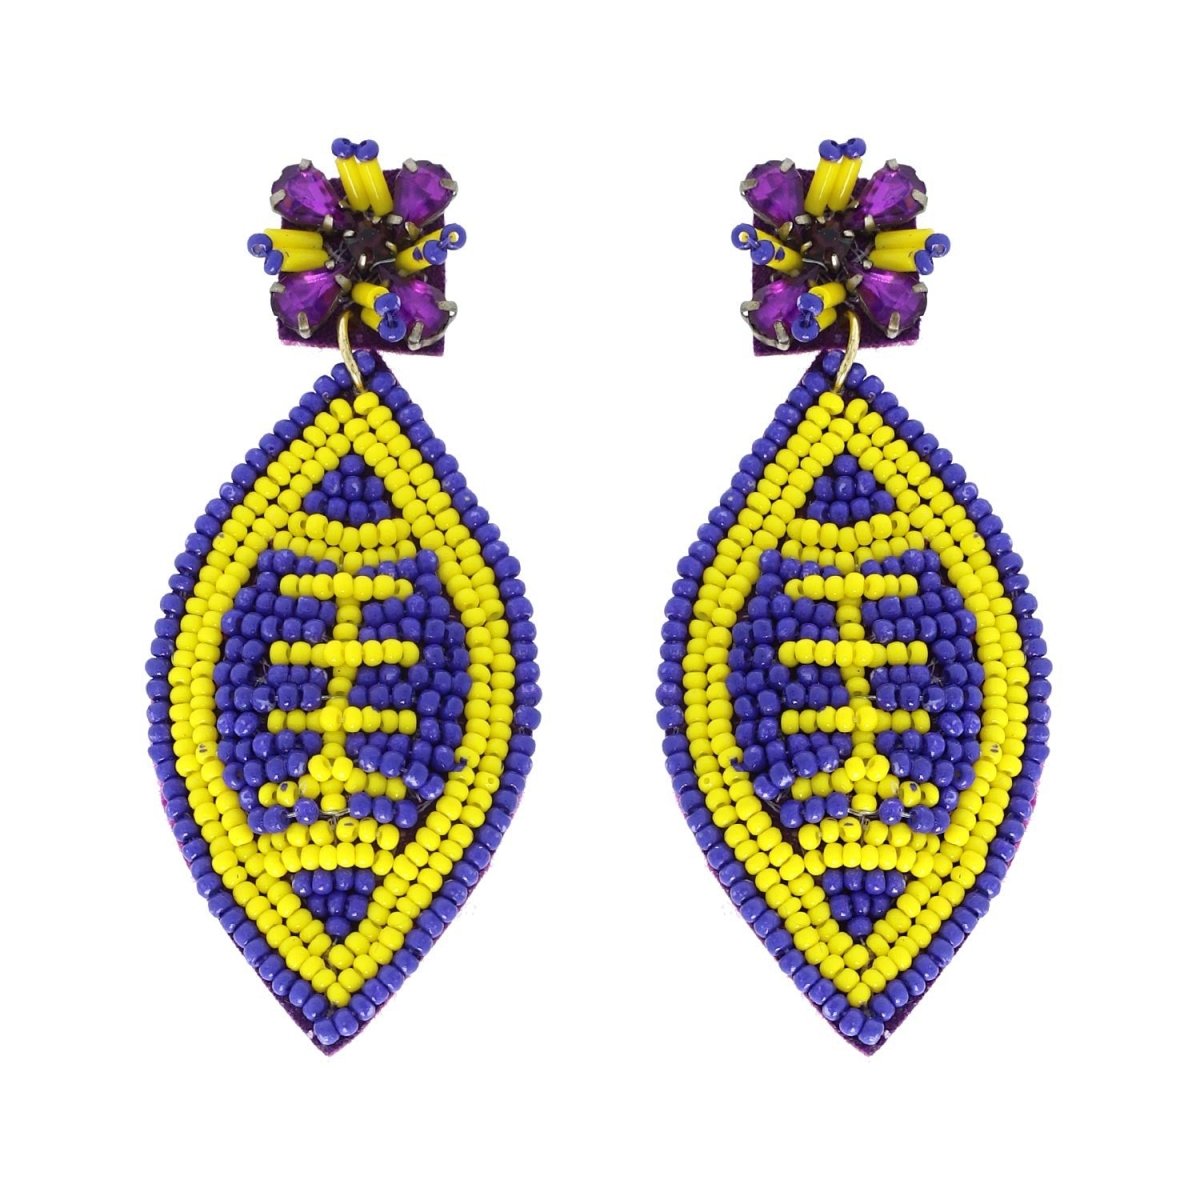 2-Tier Jeweled Beaded Football Earrings - earrings - Jimberly's Boutique